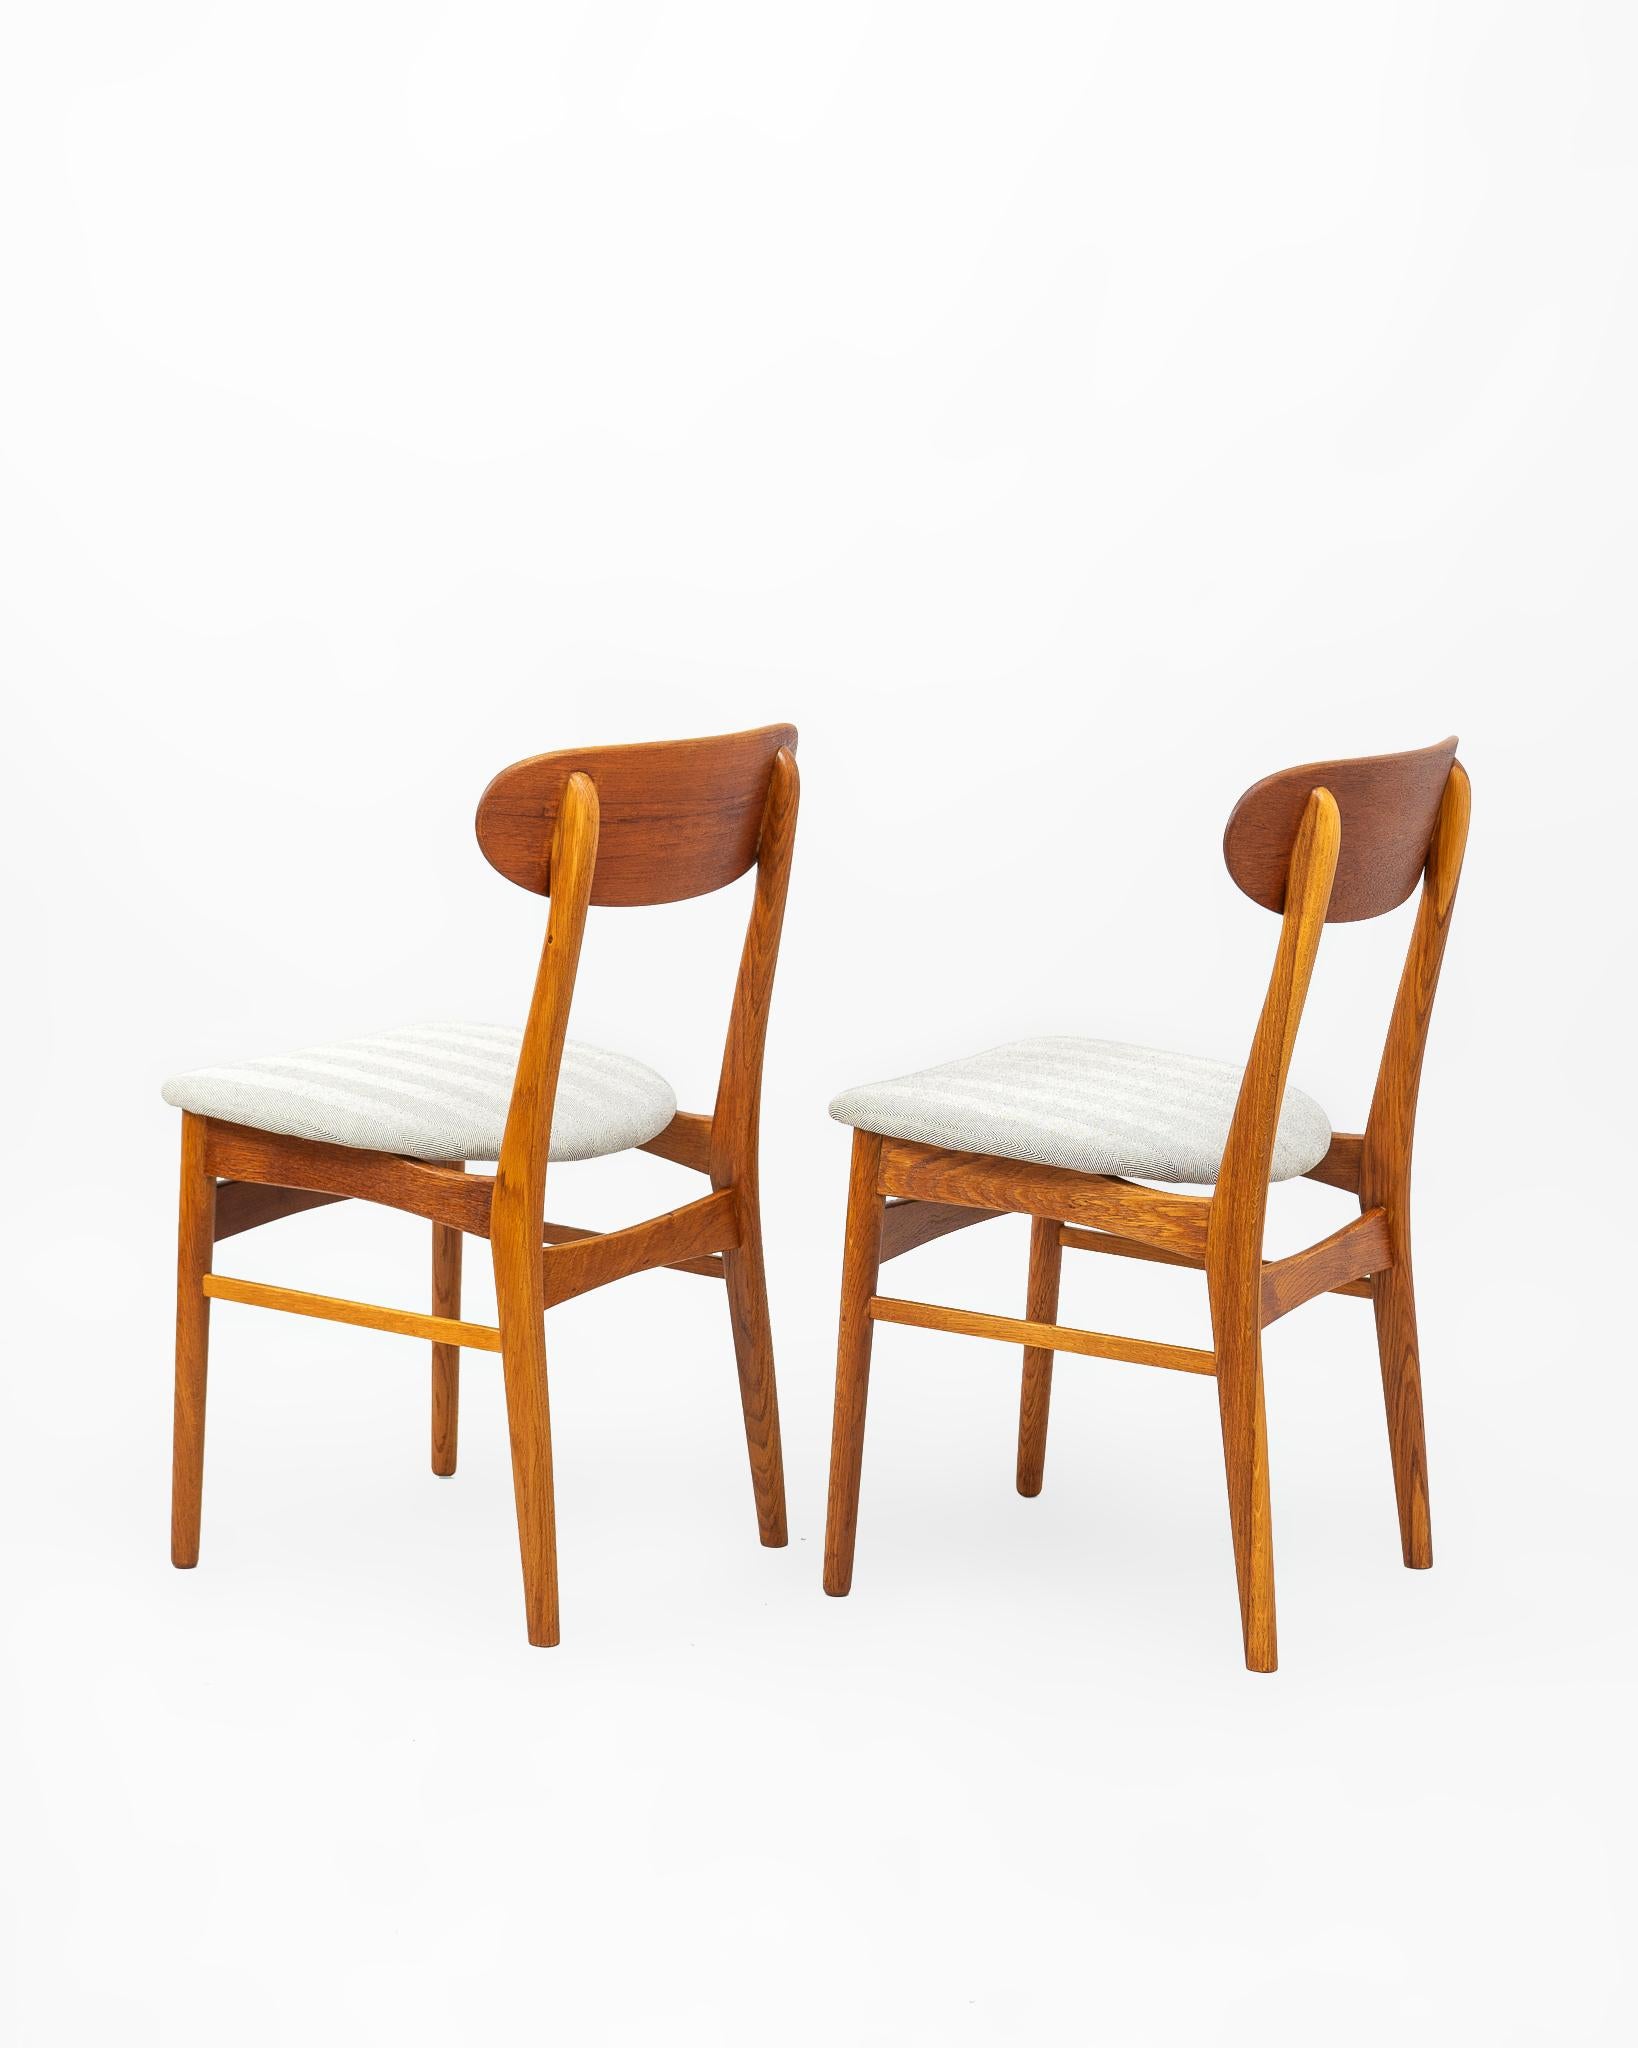 Pareja de sillas en madera de teca fabricadas en Dinamarca en la década de 1960’s. La estructura se construye en madera maciza de teca con un asiento tapizado en tejido de telar tradicional en espiga negra. El respaldo se fabrica en chapa de teca